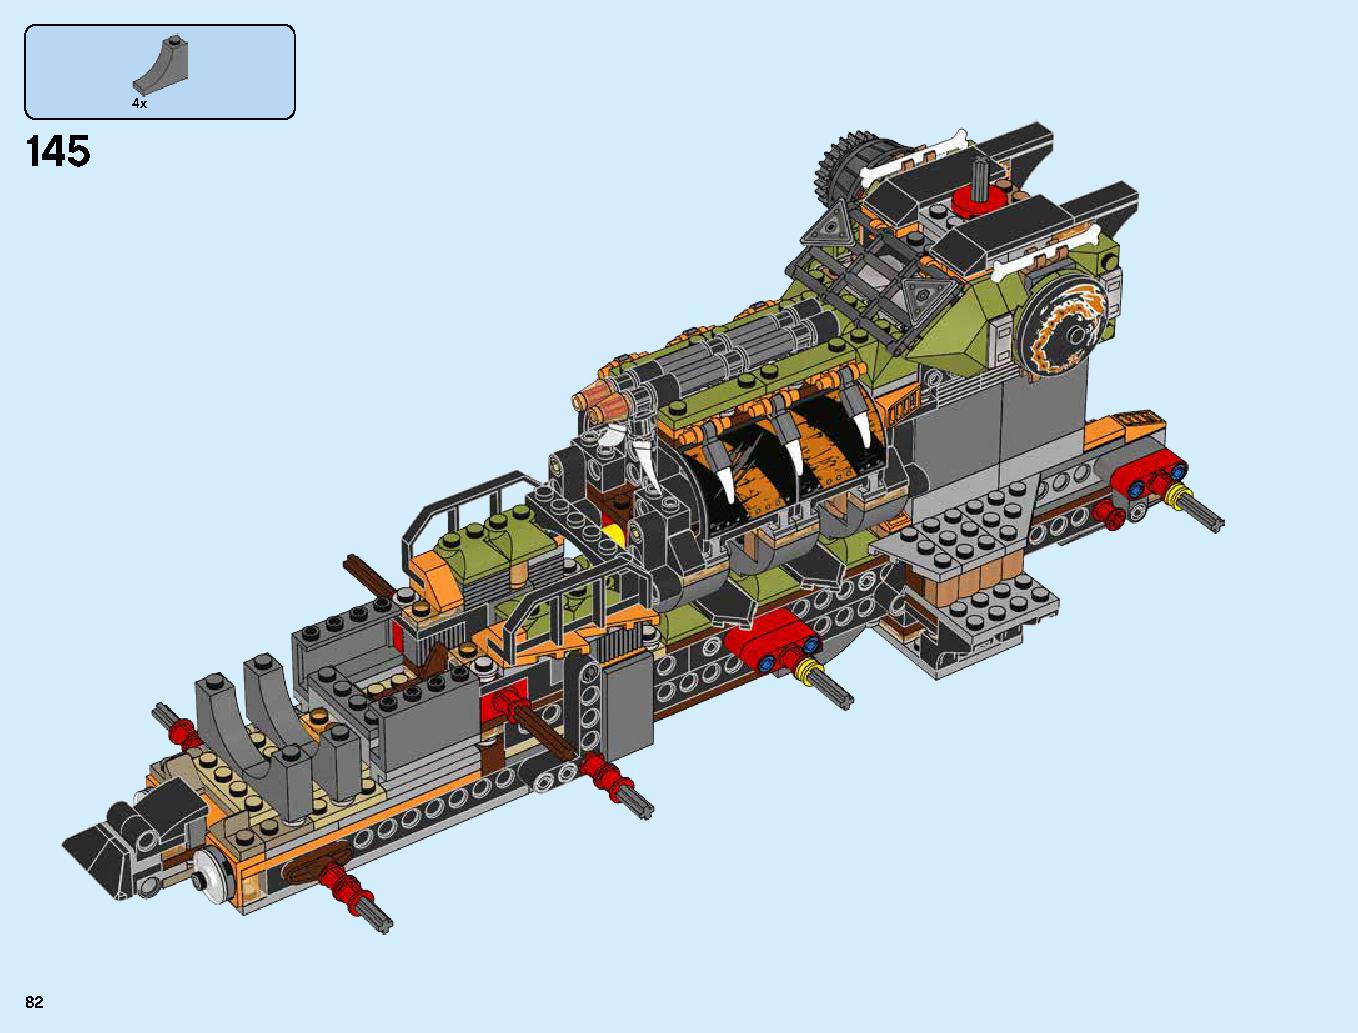 ハンティング・デスストライカー 70654 レゴの商品情報 レゴの説明書・組立方法 82 page